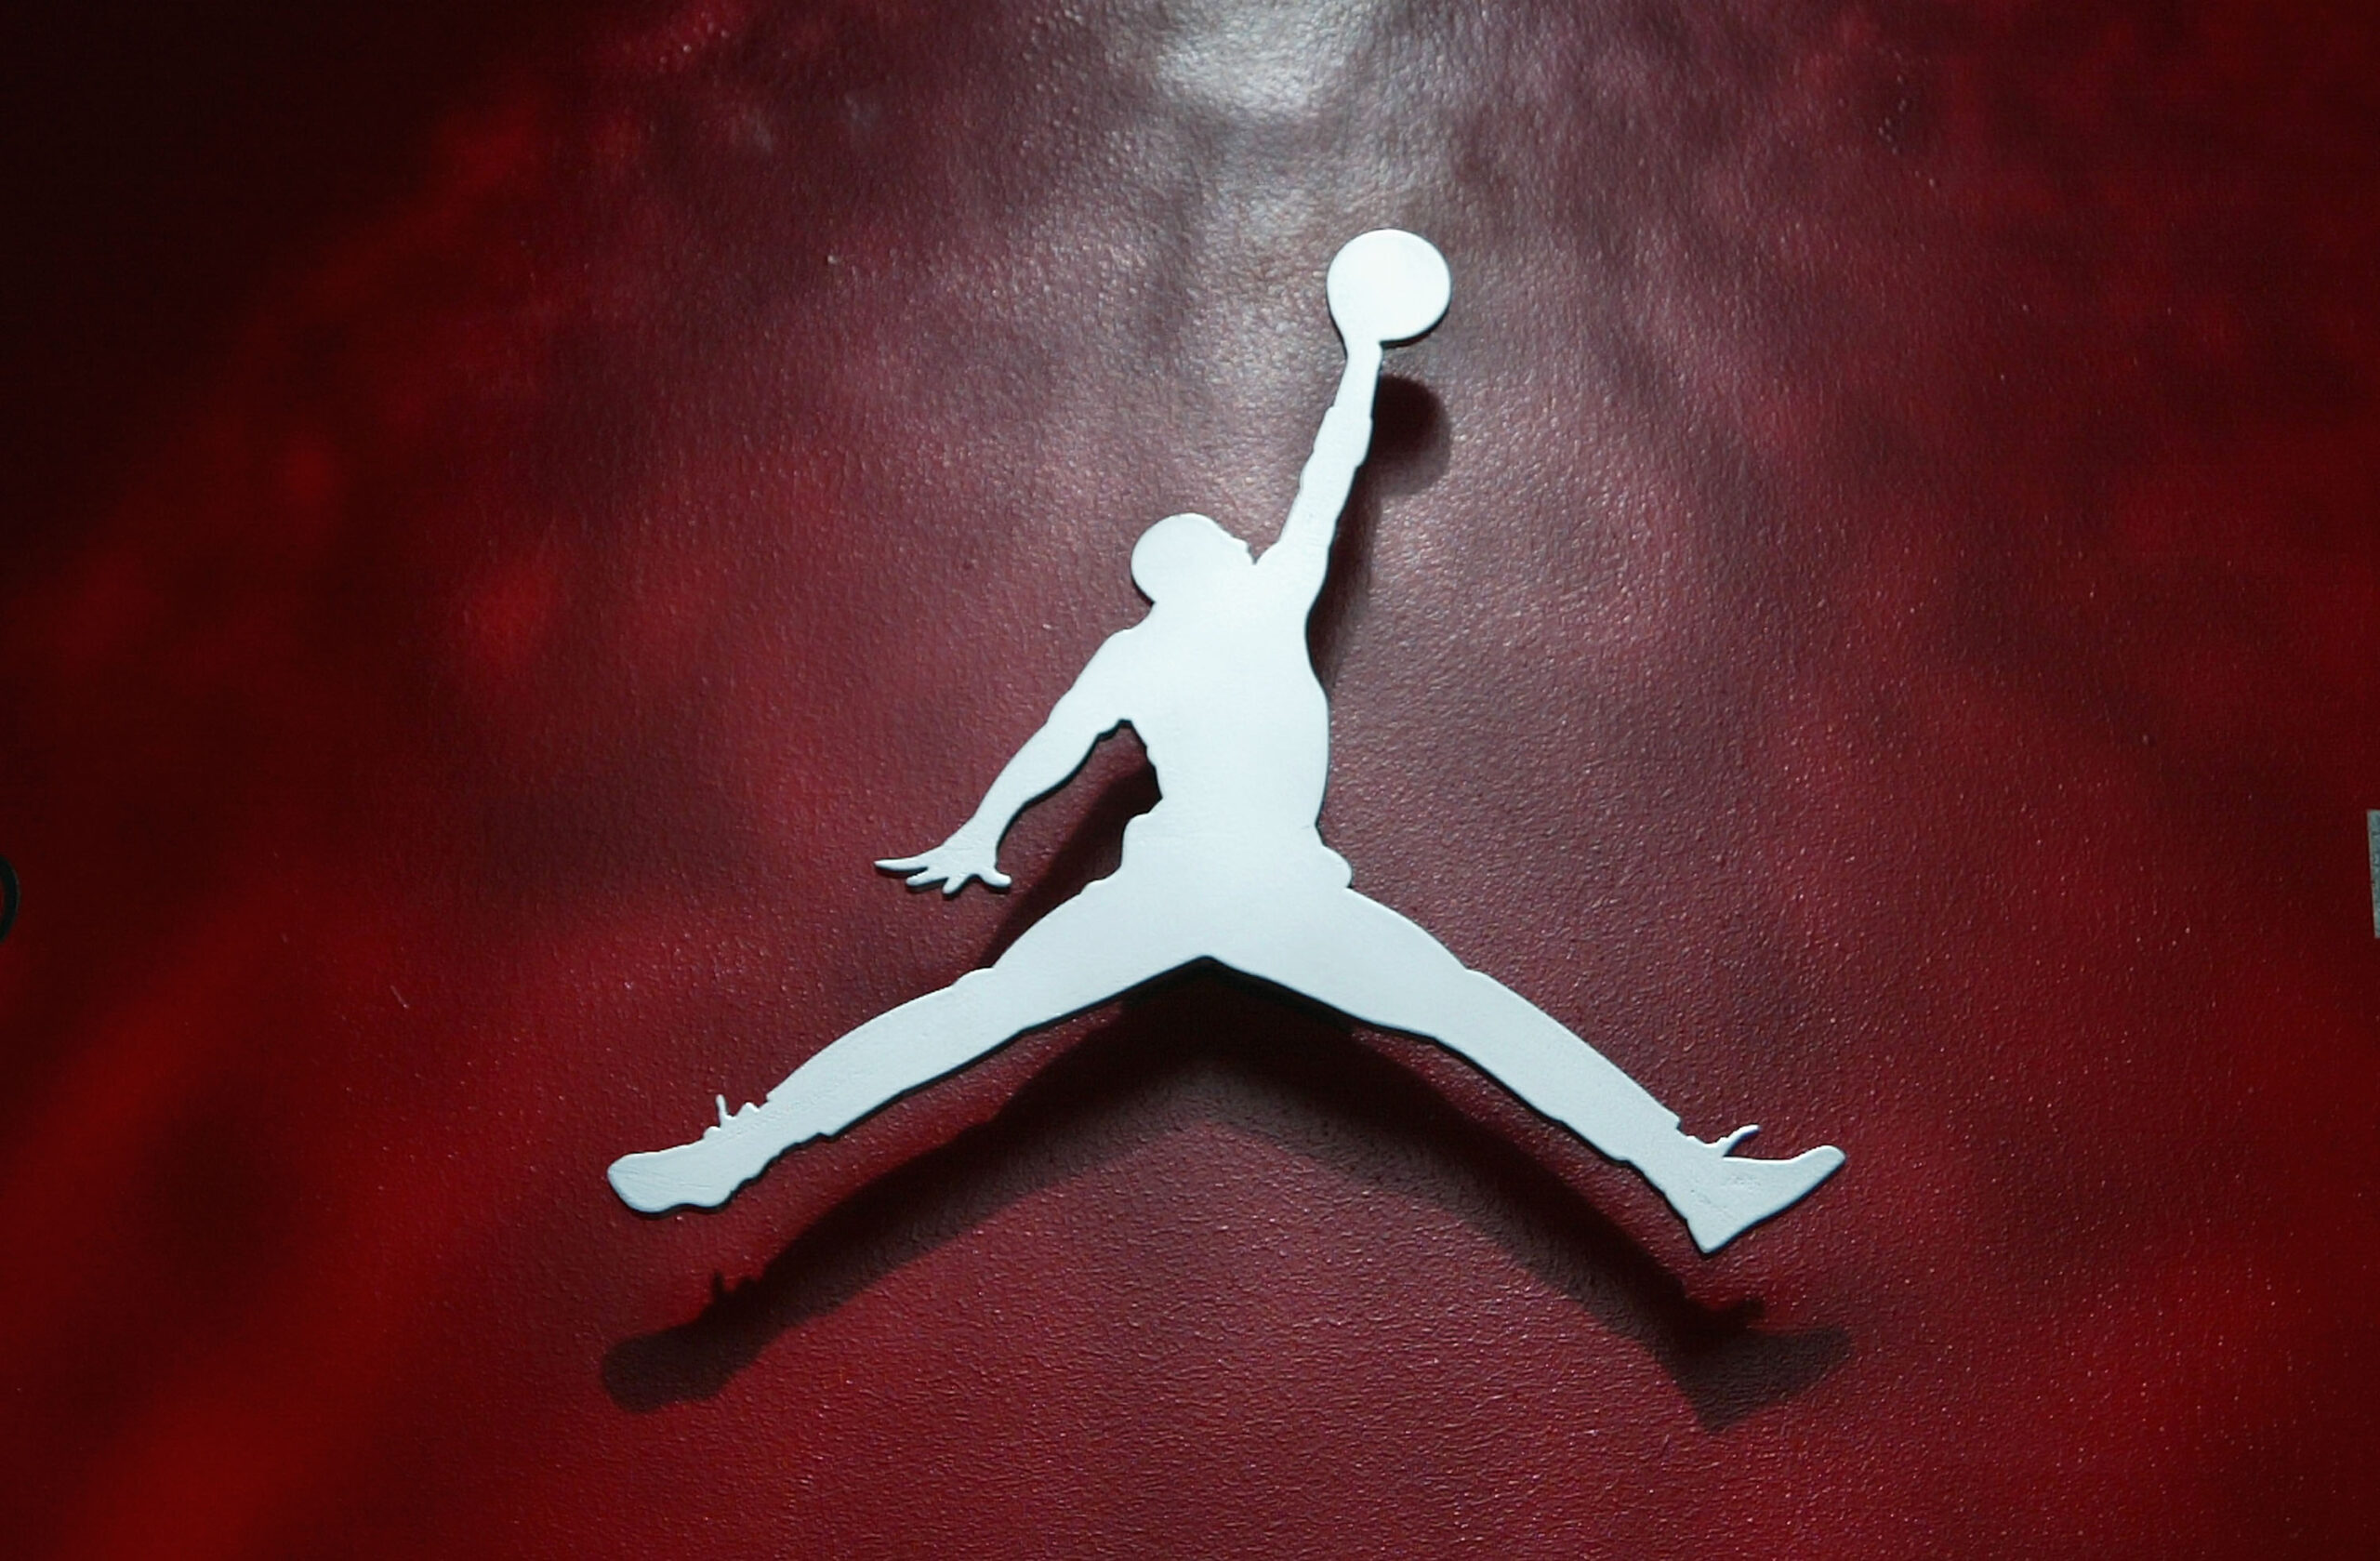 Air Jordan 11 Low “Space Jam” Gets Exclusive Look